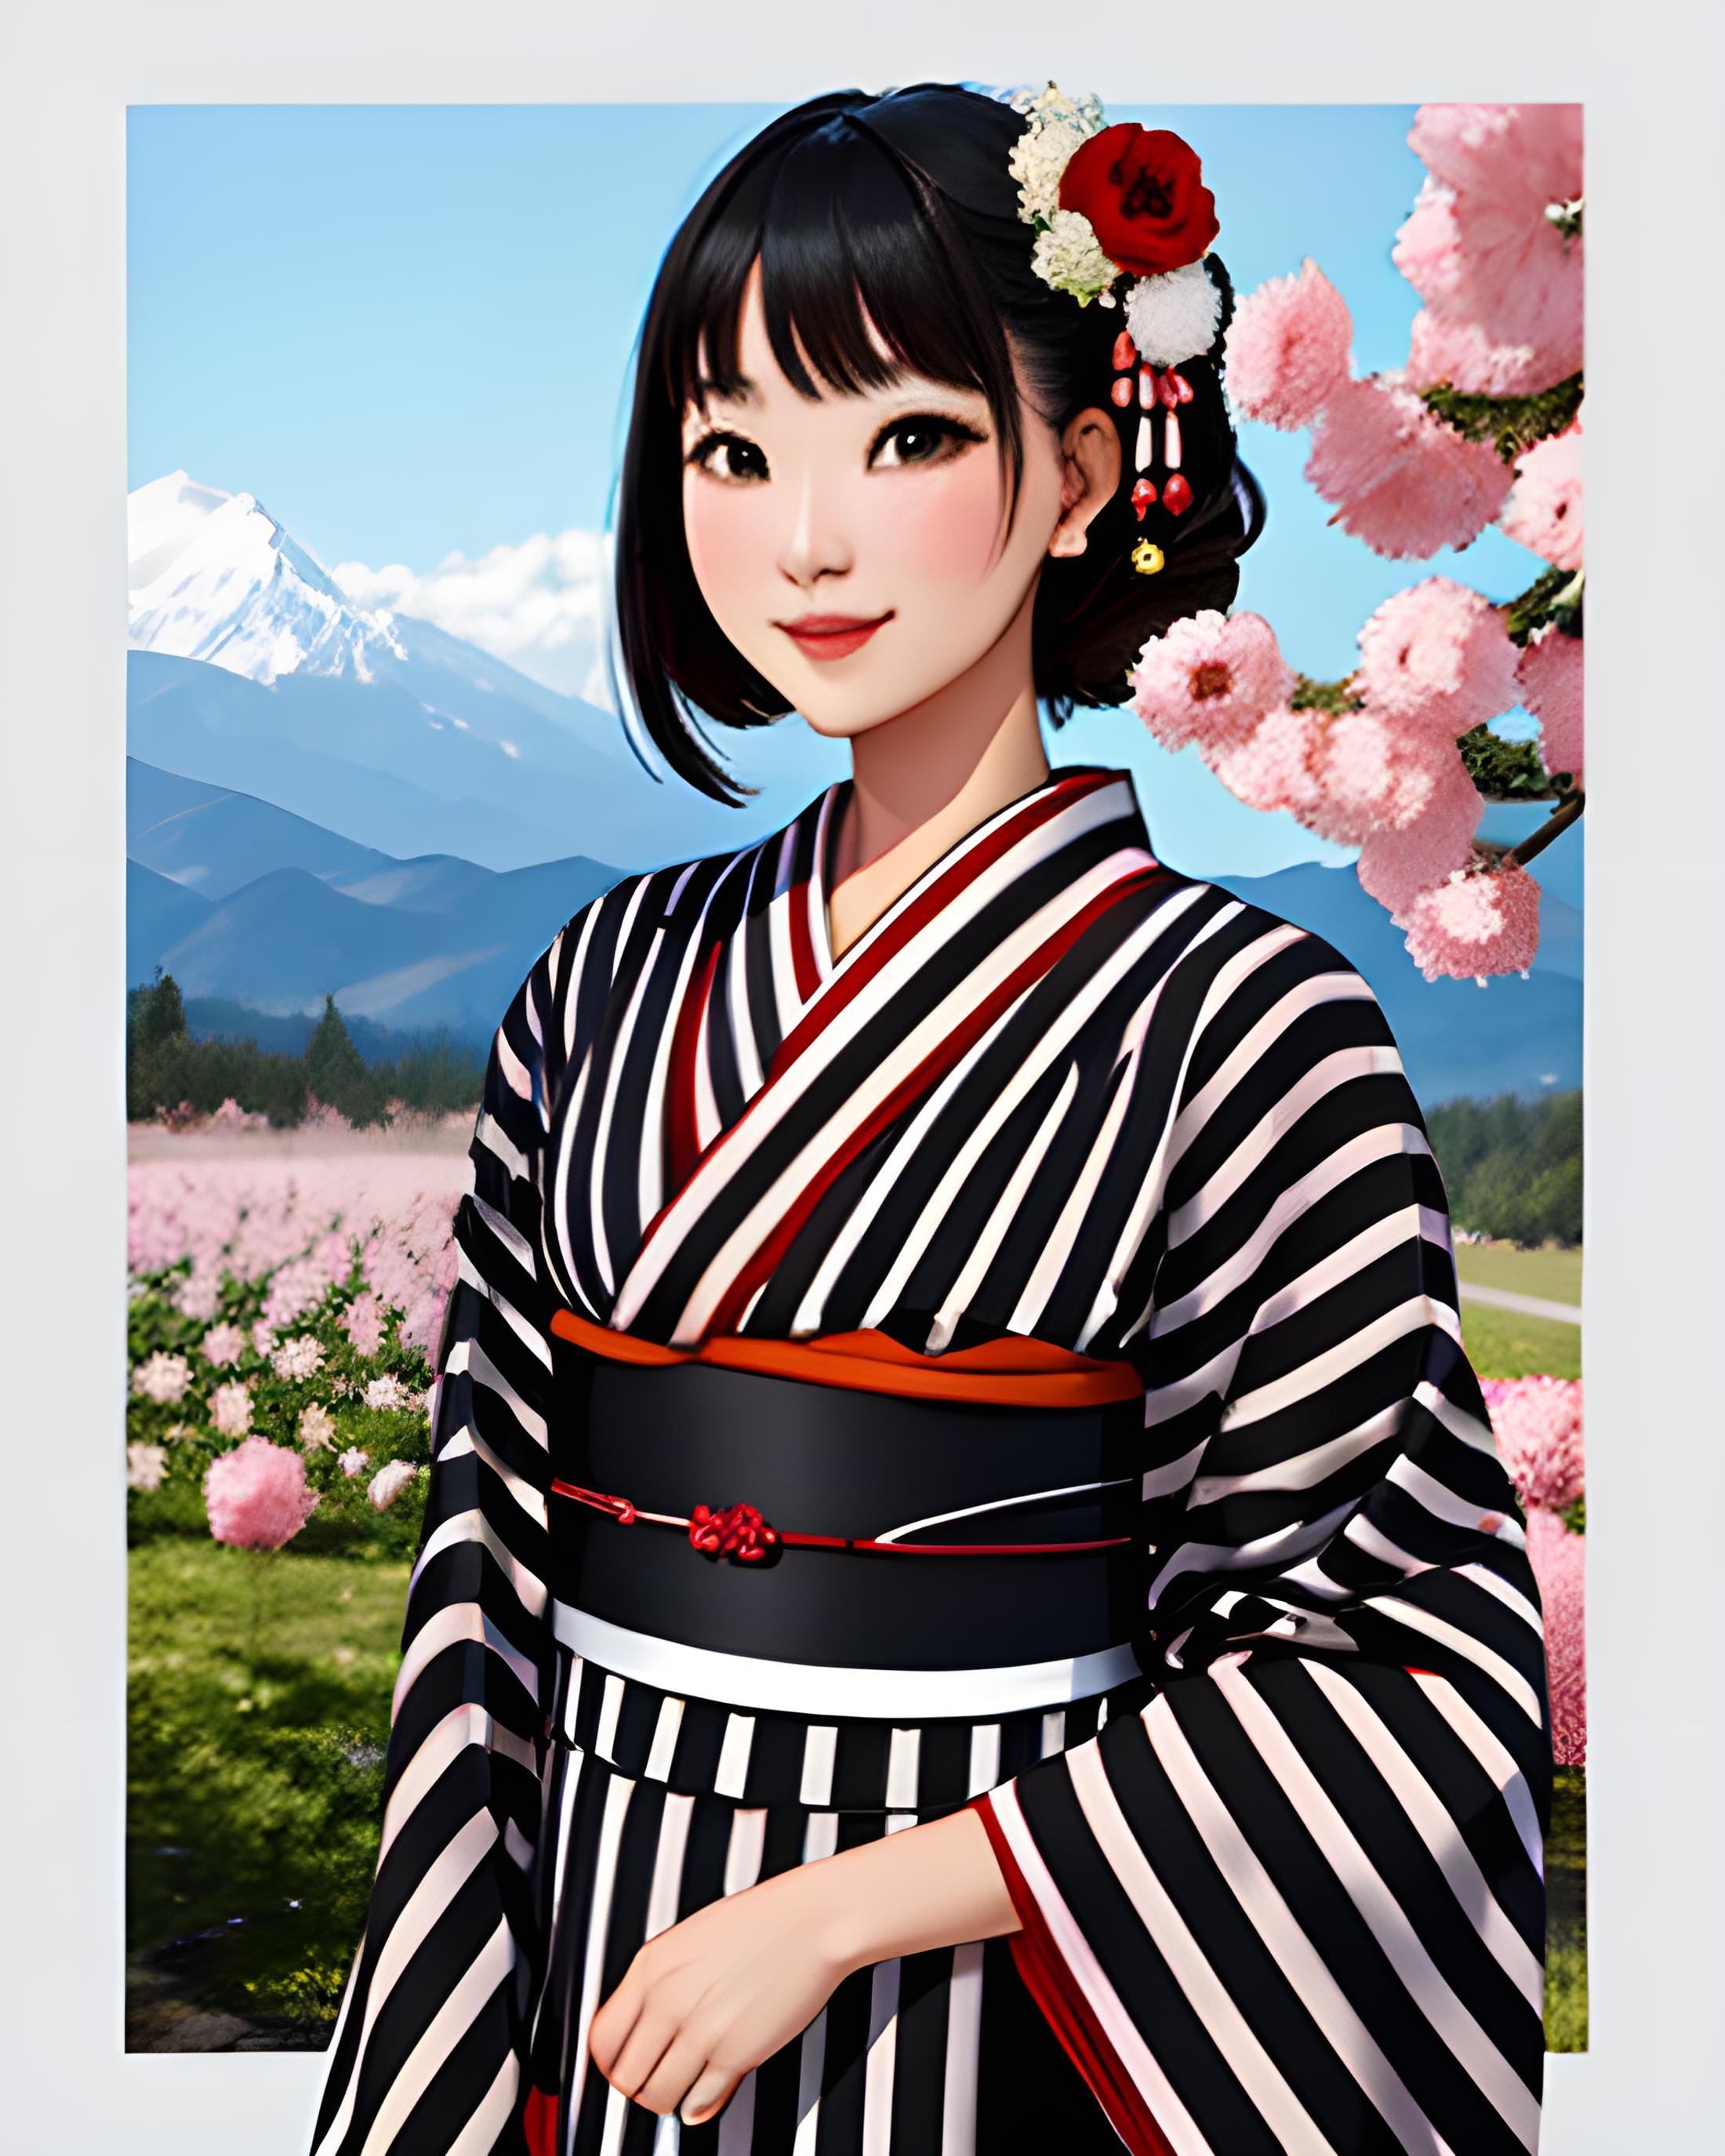 Striped Kimono image by KimiKoro